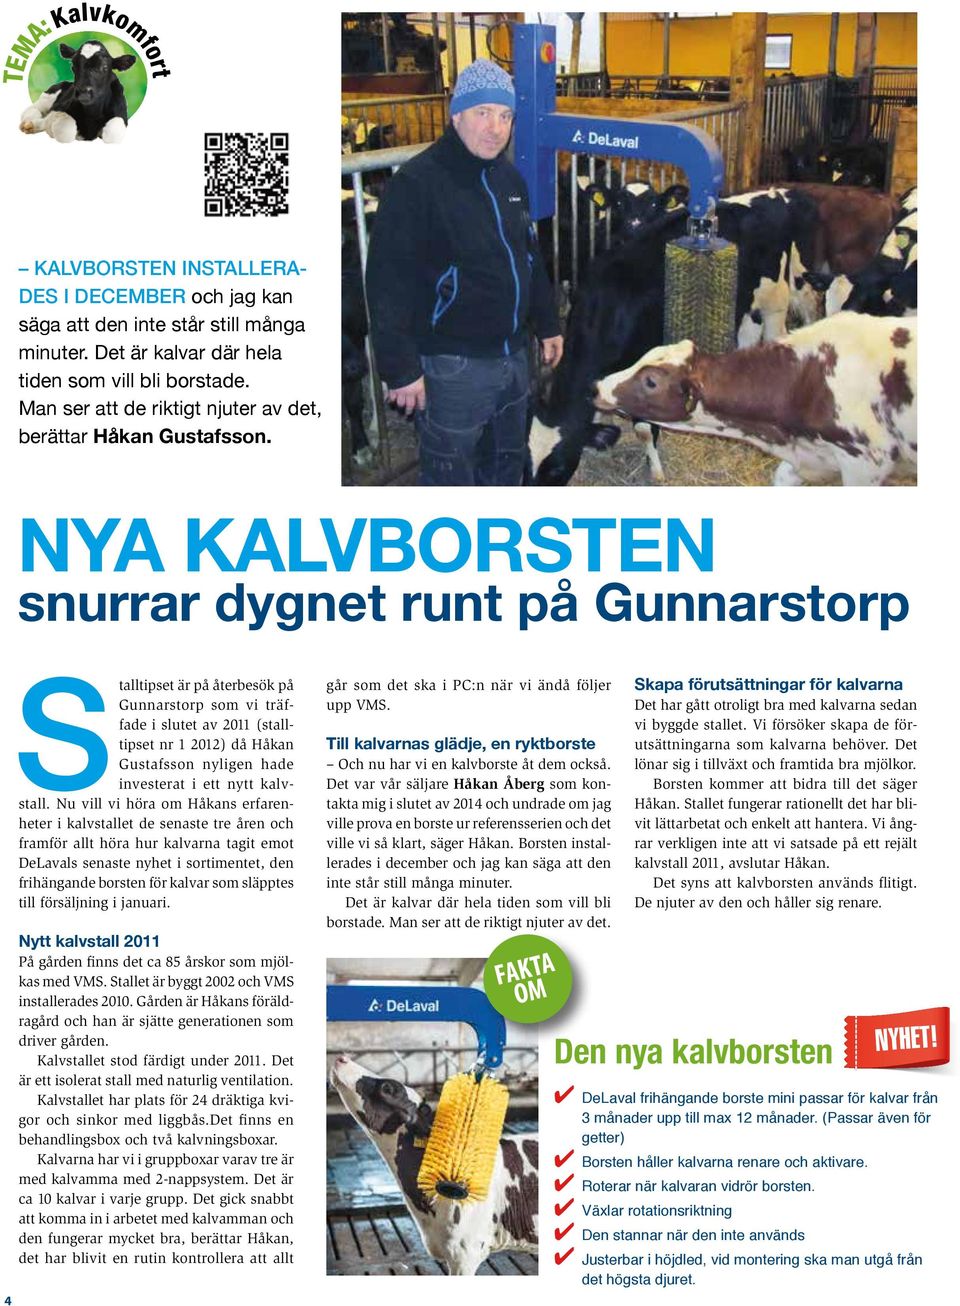 NYA KALVBORSTEN snurrar dygnet runt på Gunnarstorp 4 Stalltipset är på återbesök på Gunnarstorp som vi träffade i slutet av 2011 (stalltipset nr 1 2012) då Håkan Gustafsson nyligen hade investerat i